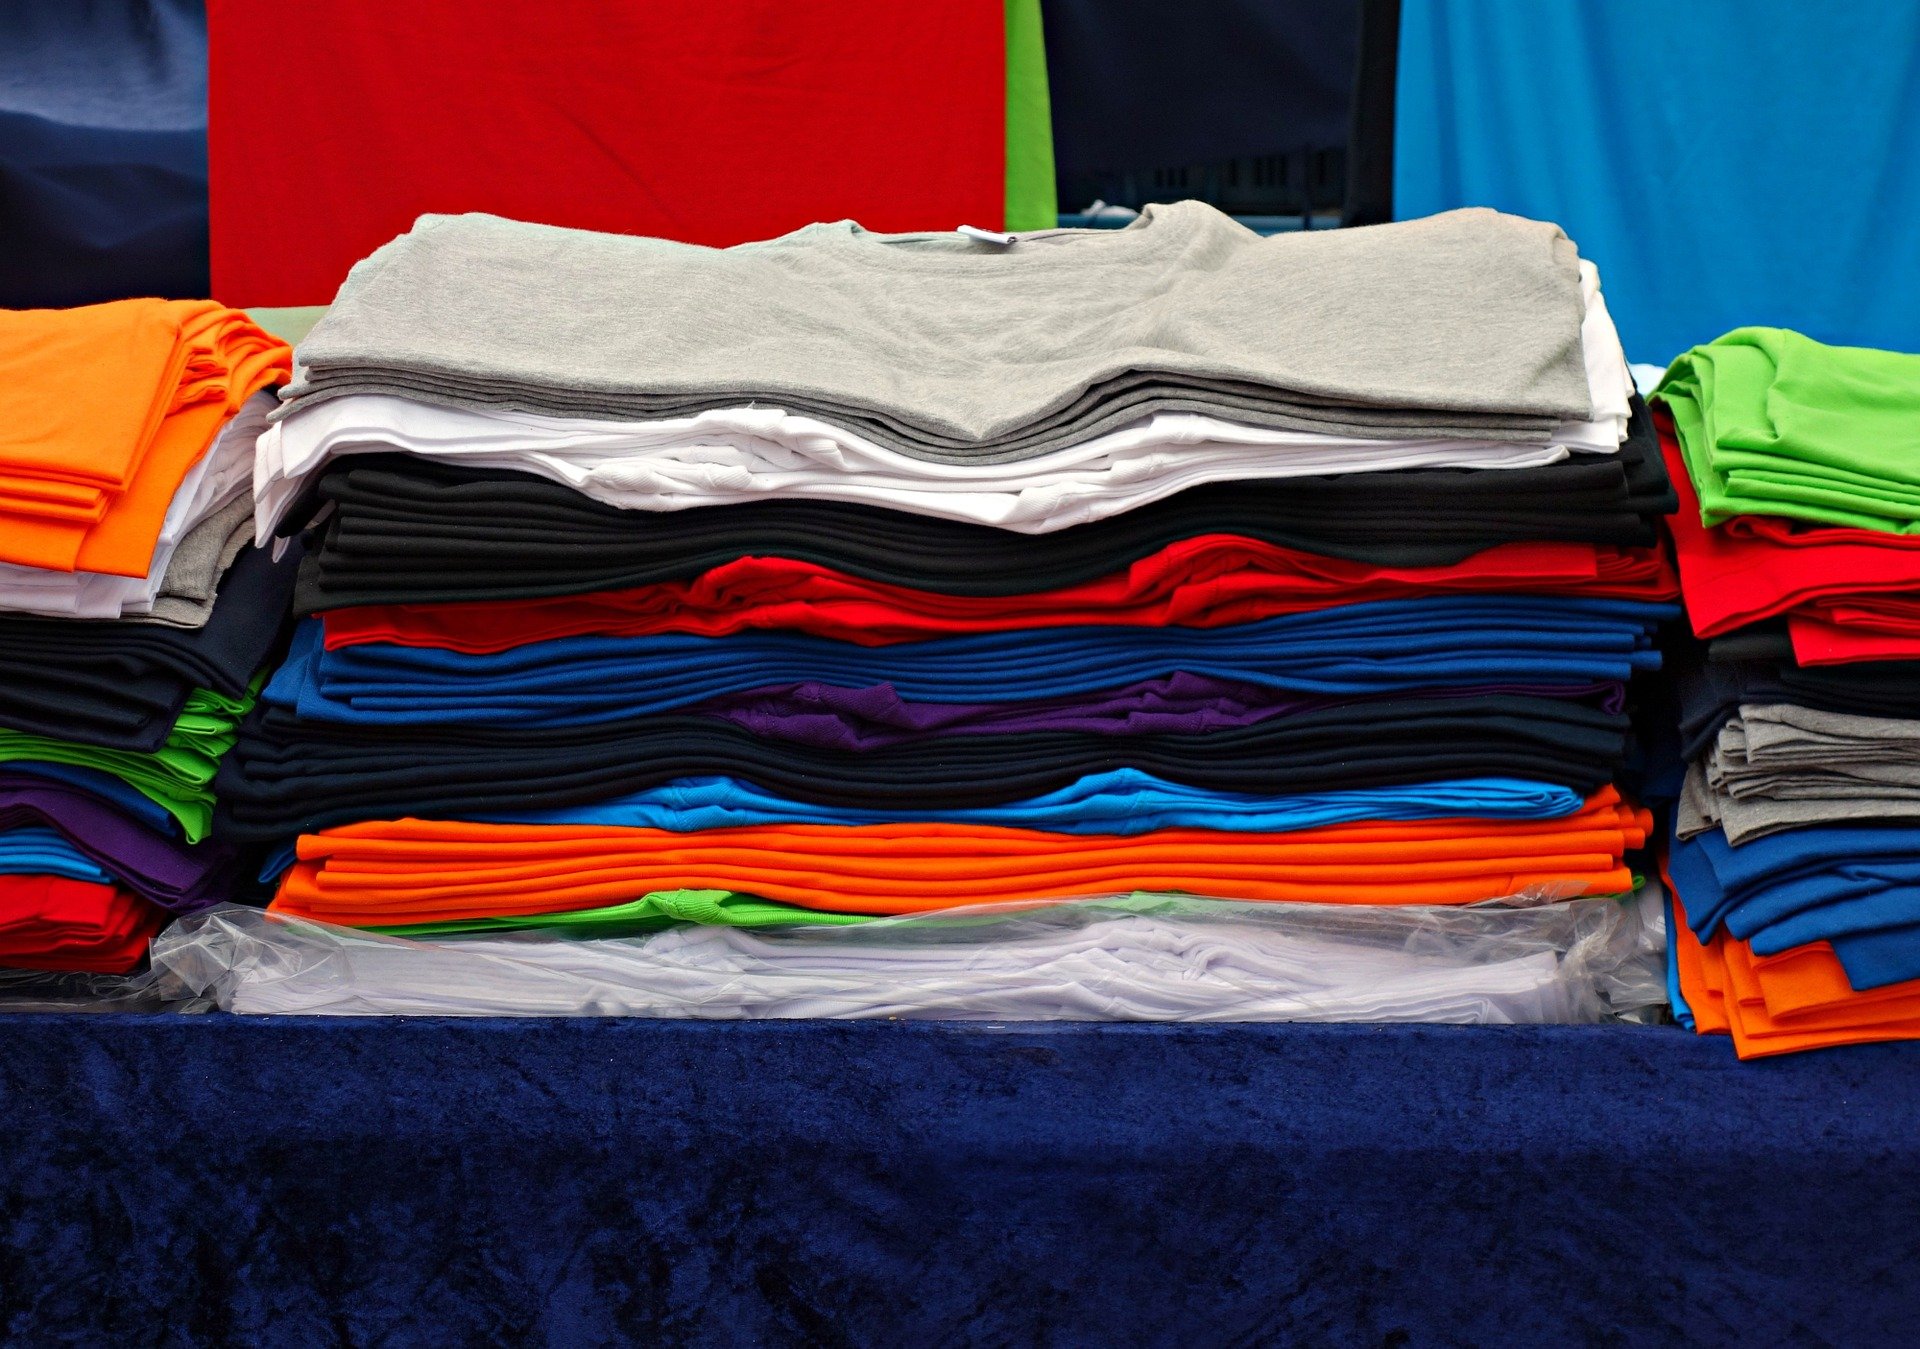 Camisetas coloridas empilhadas